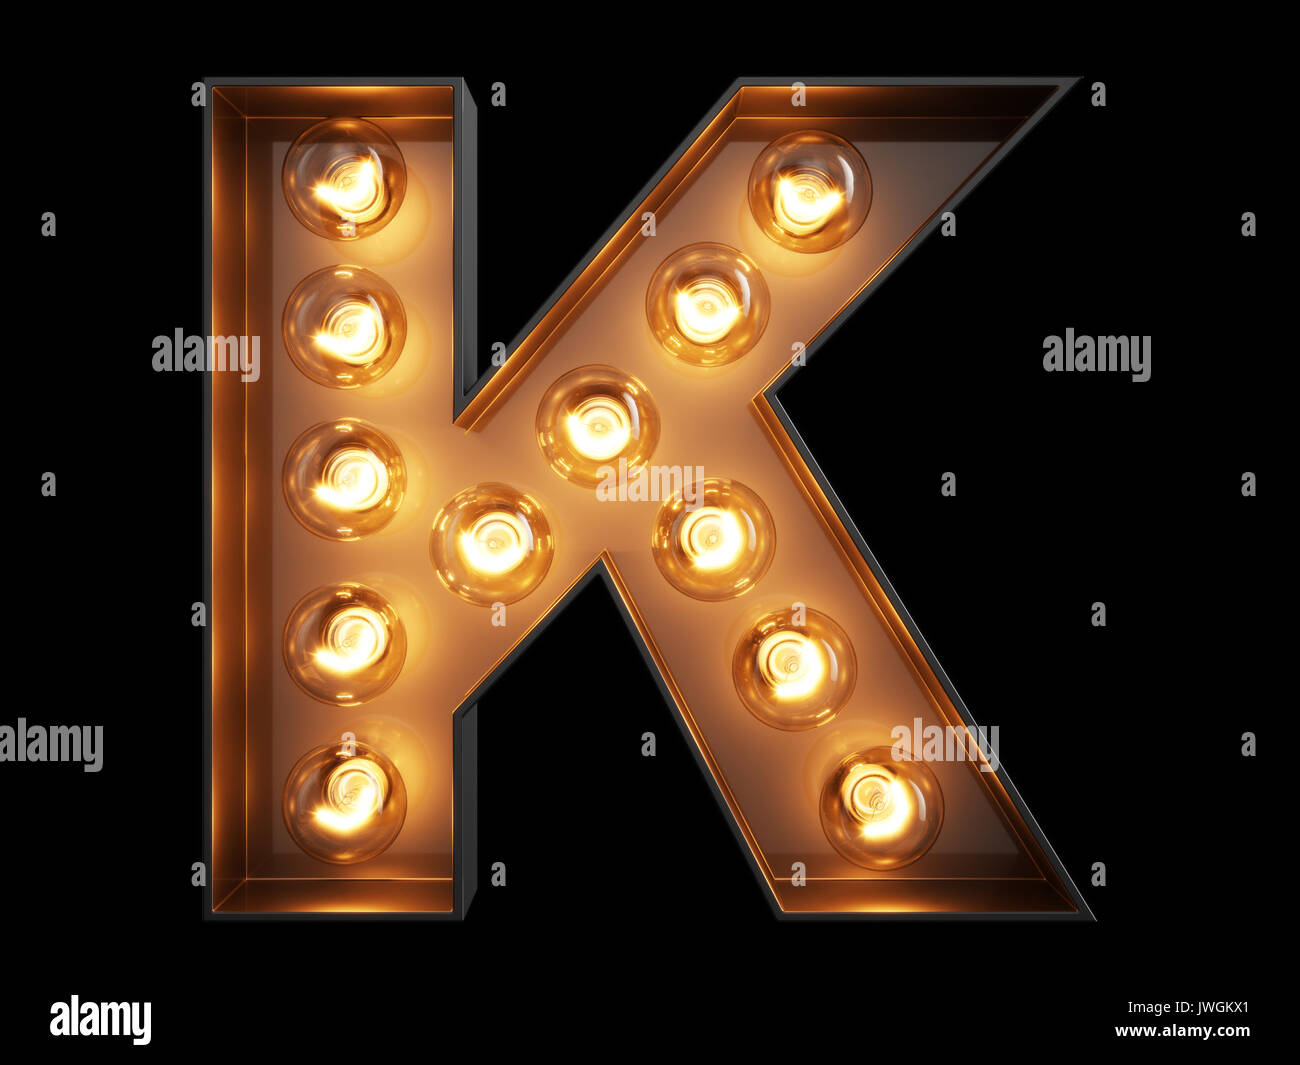 Glühlampe leuchtenden Buchstaben Alphabet Buchstaben K Font. Vorderansicht  beleuchtete Hauptstadt Symbol auf schwarzem Hintergrund. 3D Rendering  illustration Stockfotografie - Alamy